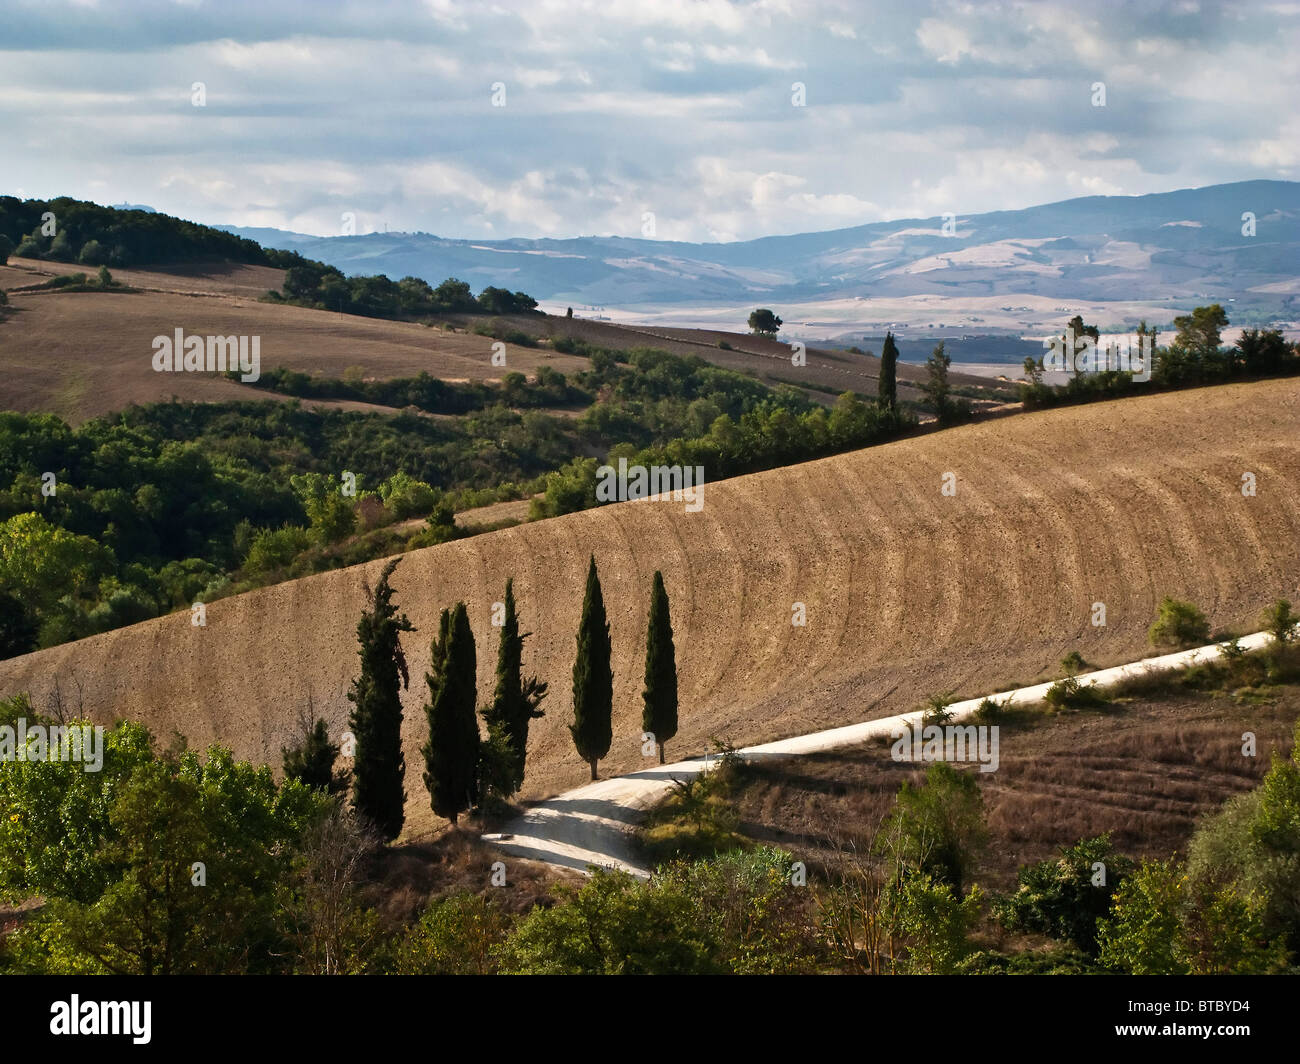 Route de gravier blanc avec des cyprès casting de longues ombres Toscane Italie Banque D'Images